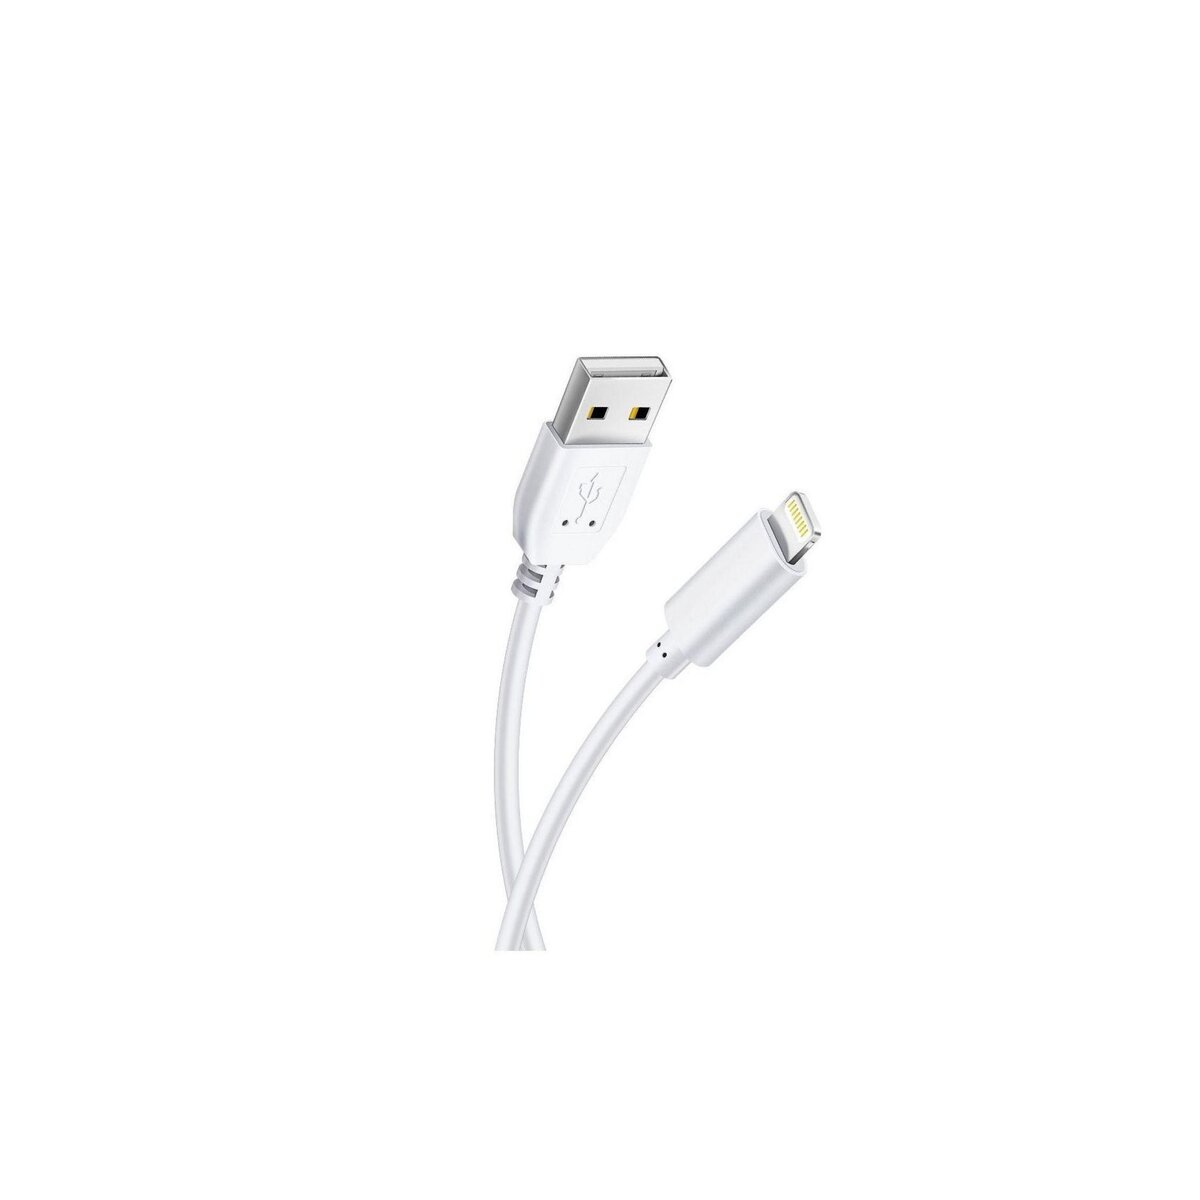 One + Embout Secteur USB + Câble pour iPhone 5 à 13 - 2.